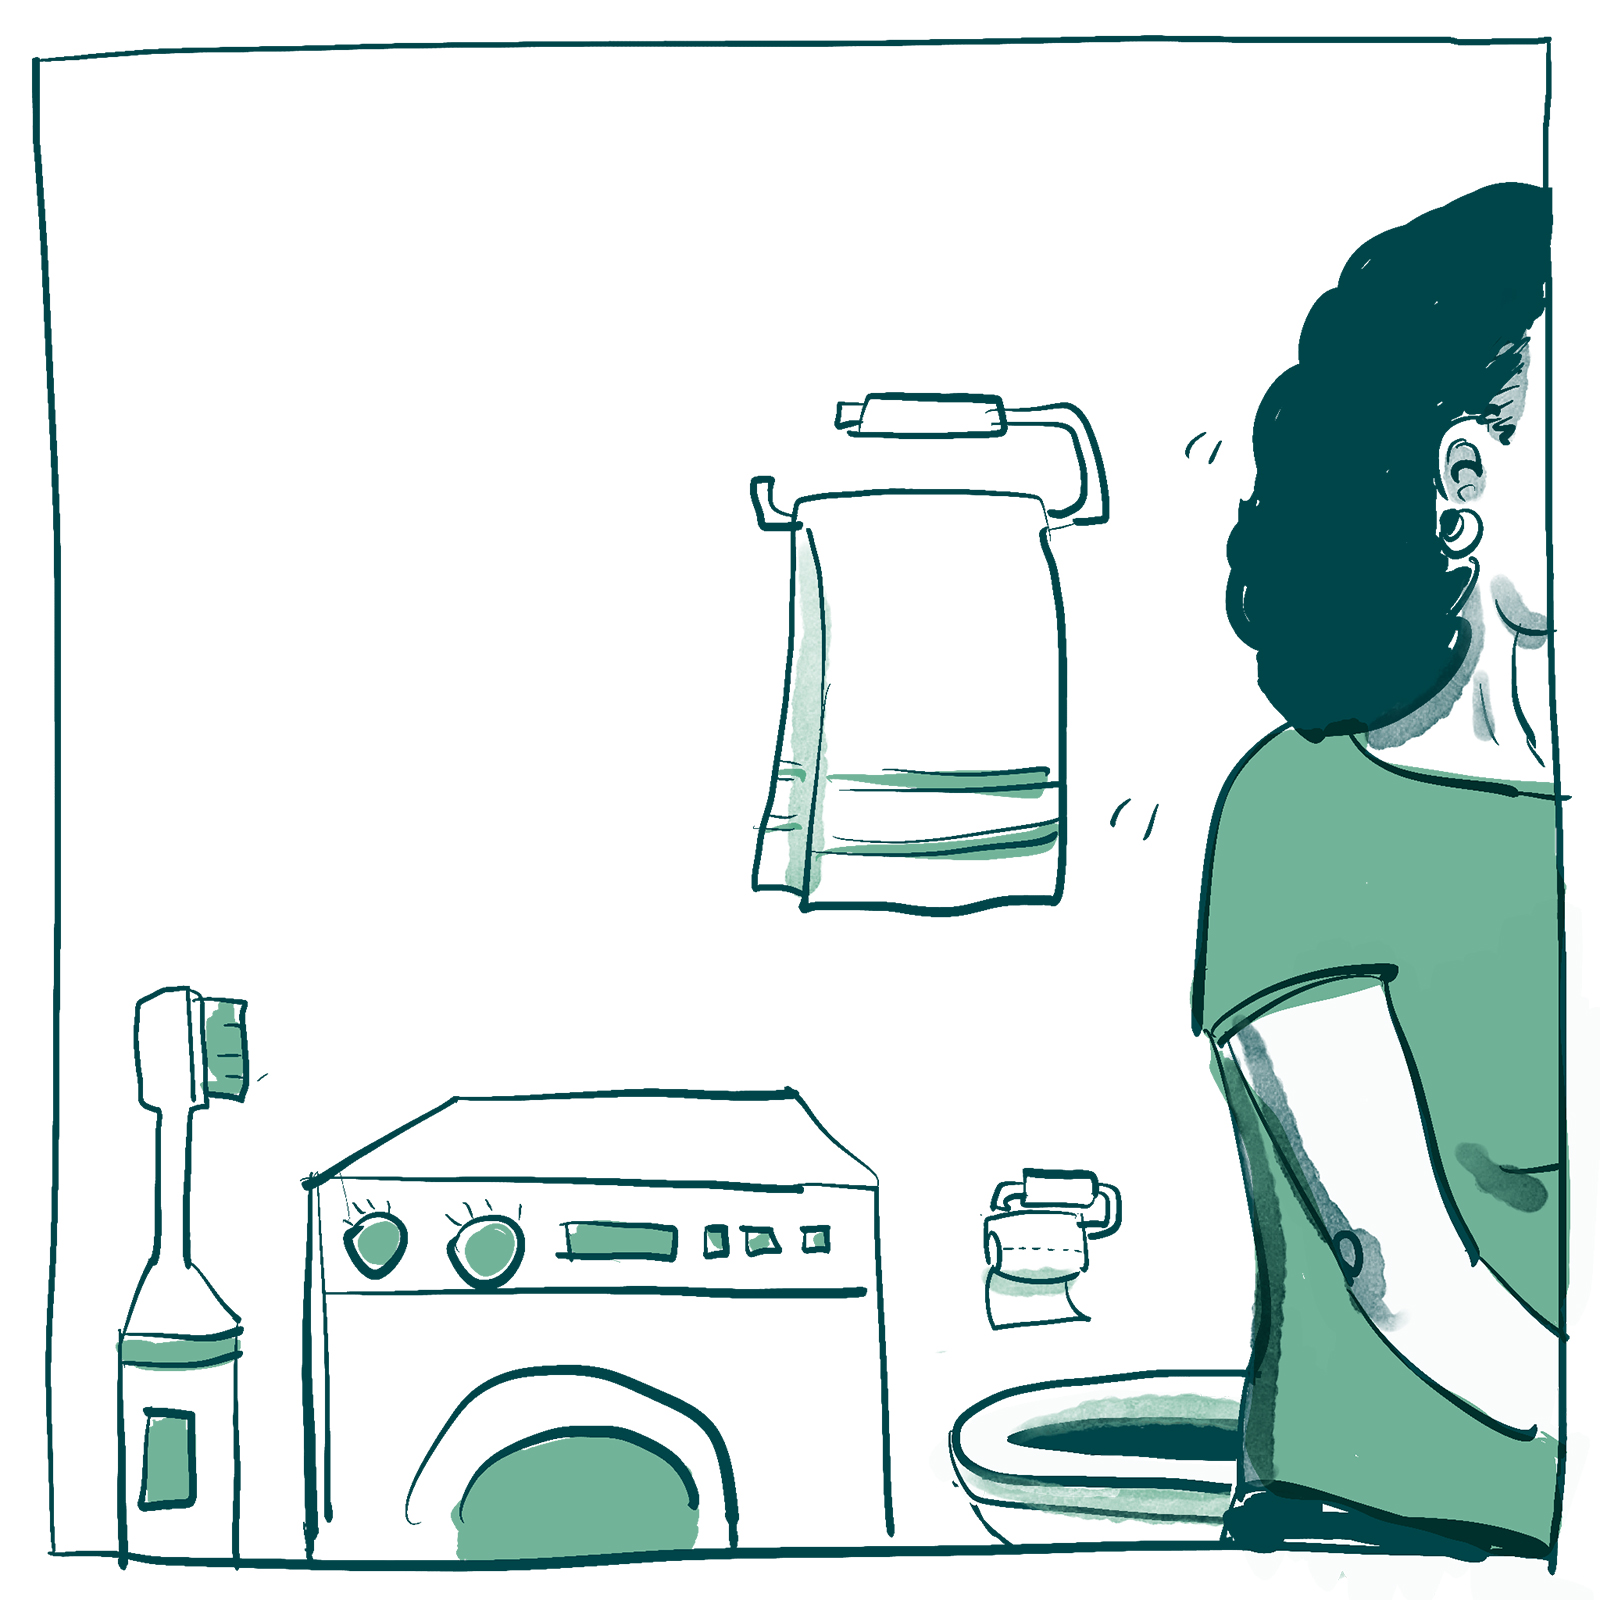 Piirros, jossa ihminen poistuu kylpyhuoneesta. Taustalla näkyy hammasharja, pesukone, vessapaperirulla ja pyyheteline.